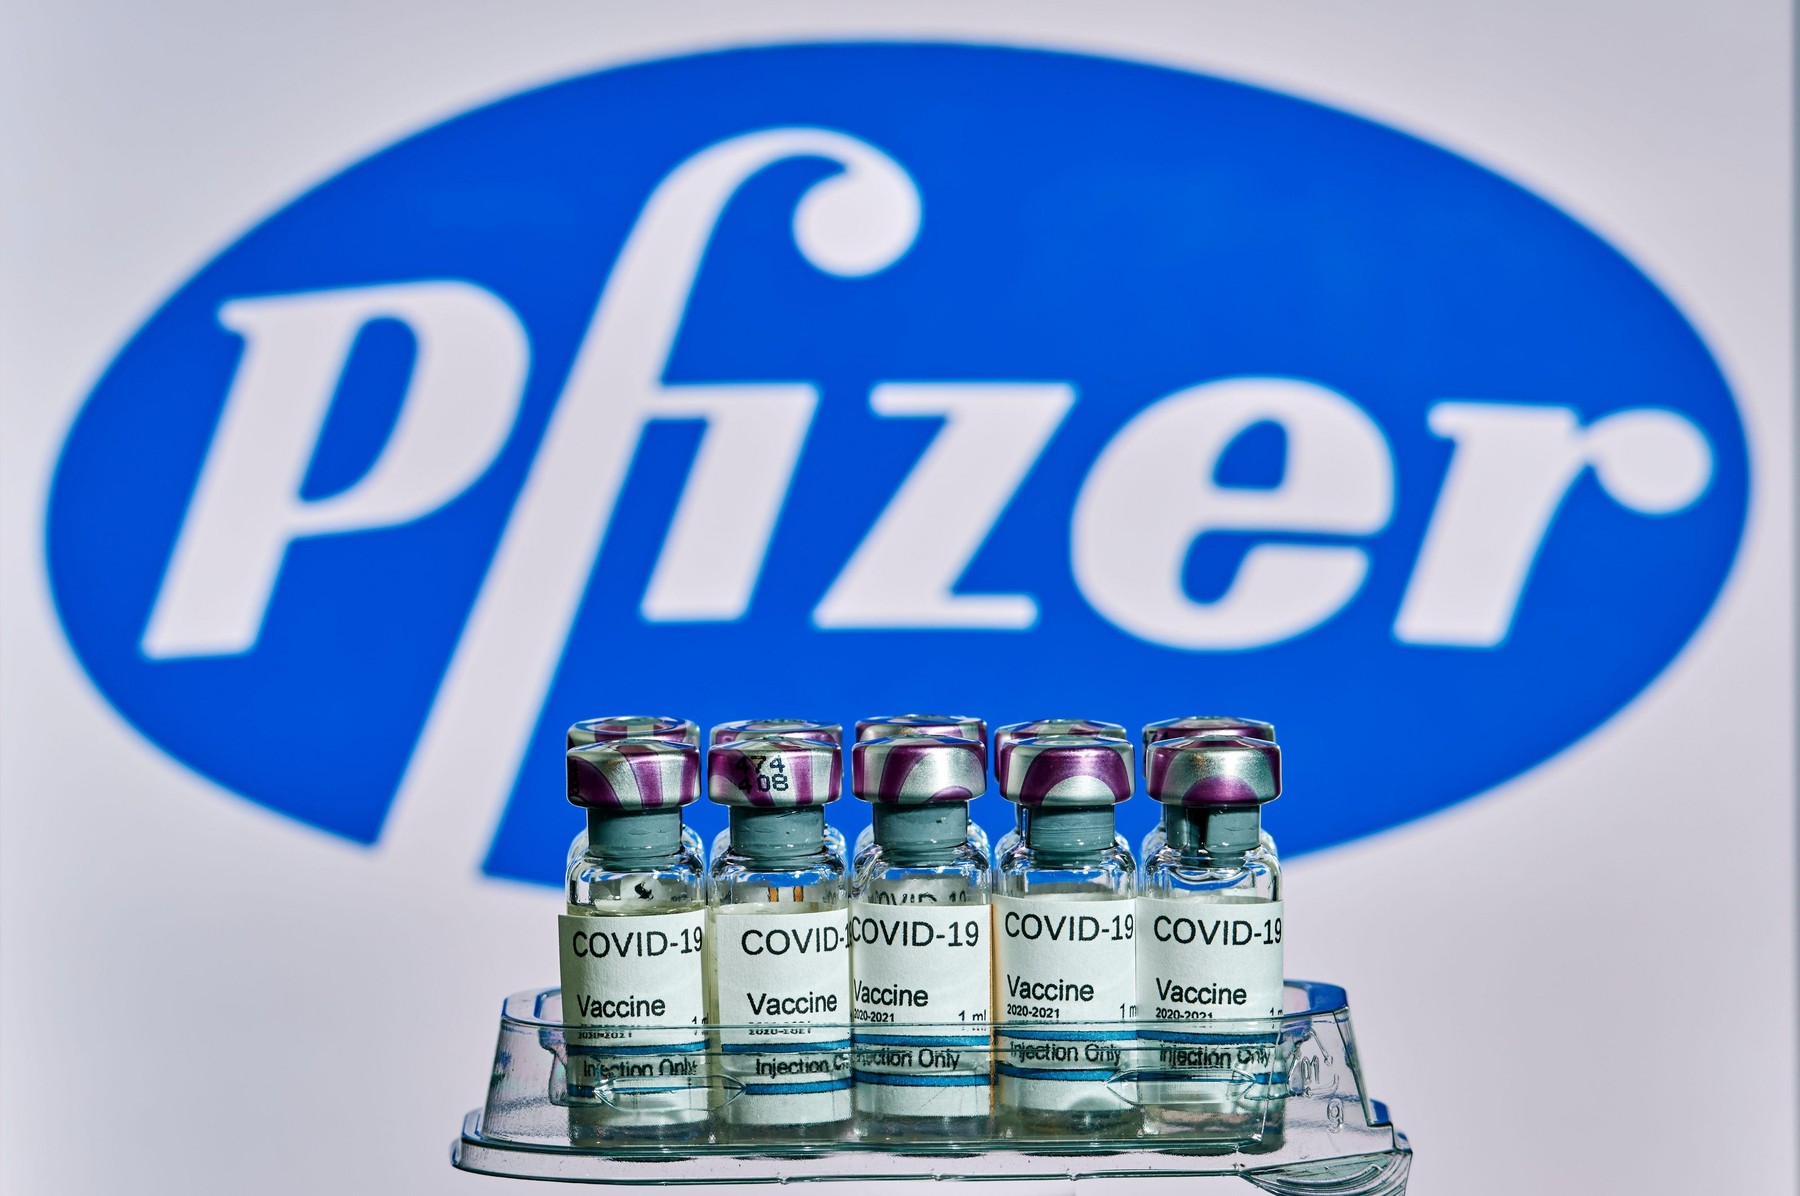 Вакцины 2020. Файзер фармацевтическая компания. Фарм компания Pfizer. Препараты компании Пфайзер. Pfizer вакцина.